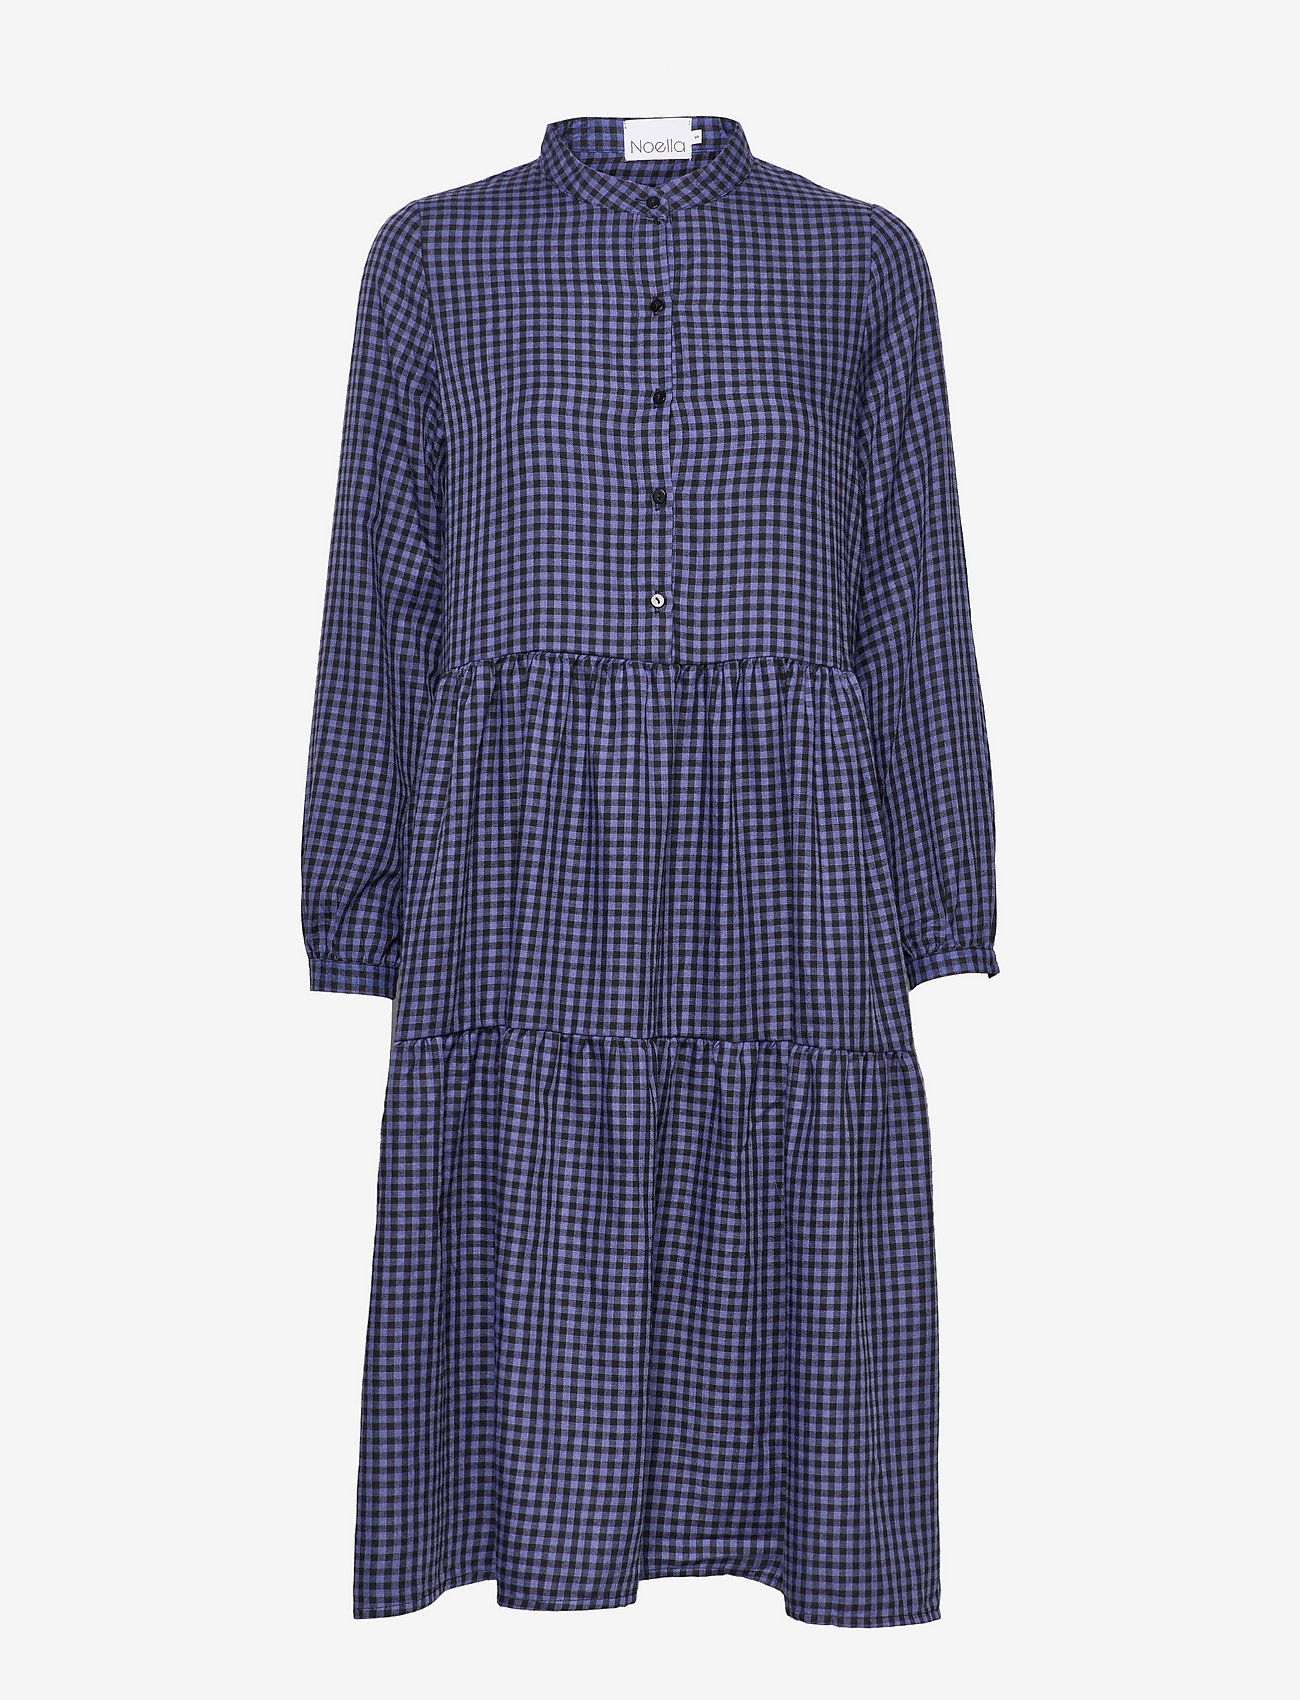 Noella - Lipe Dress Cotton - skjortekjoler - navy/black checks - 0